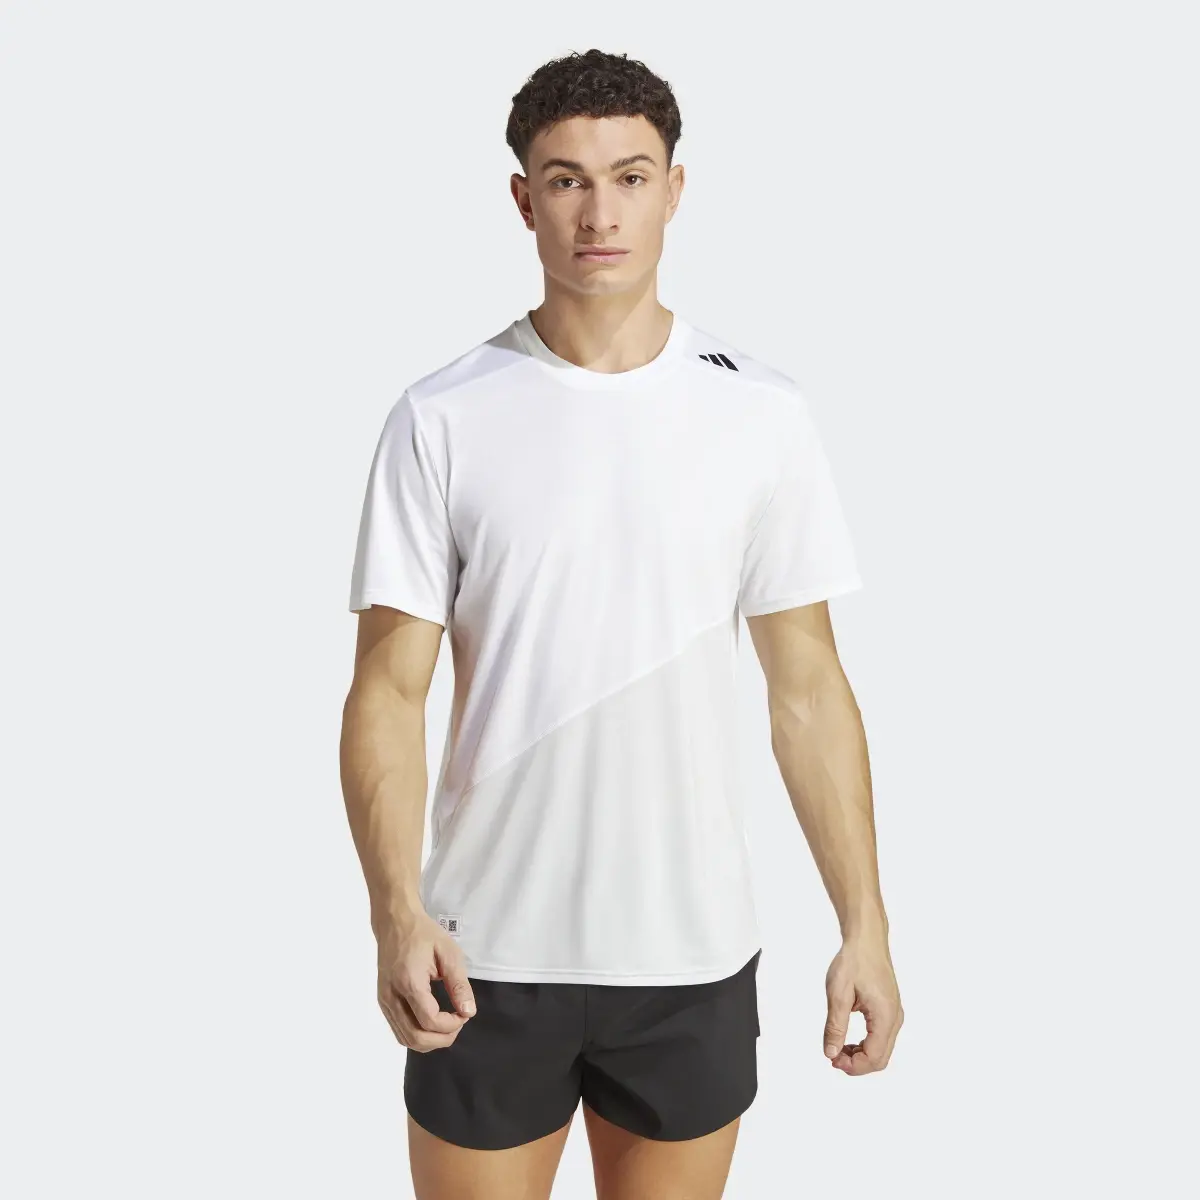 Adidas T-shirt de Running Made to be Remade. 2